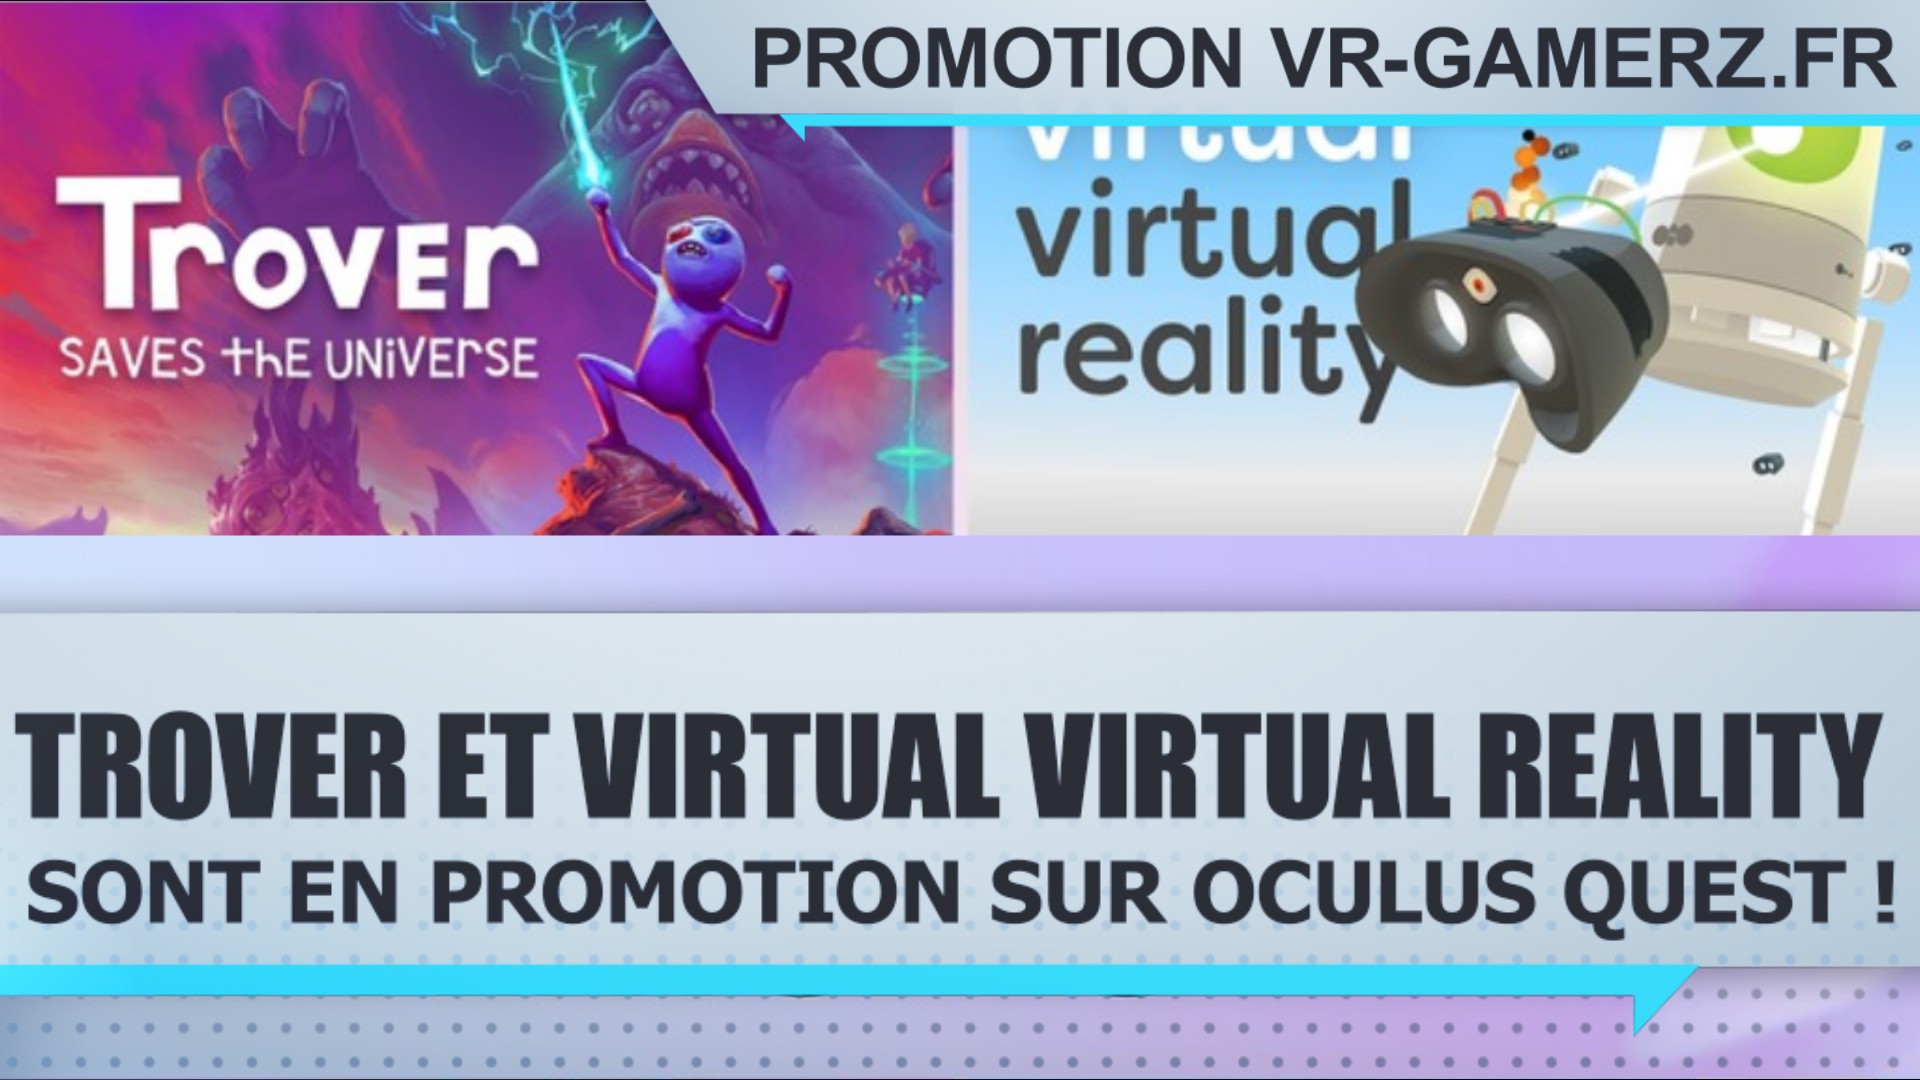 Trover saves the universe et Virtual virtual reality sont en promotion sur Oculus quest !